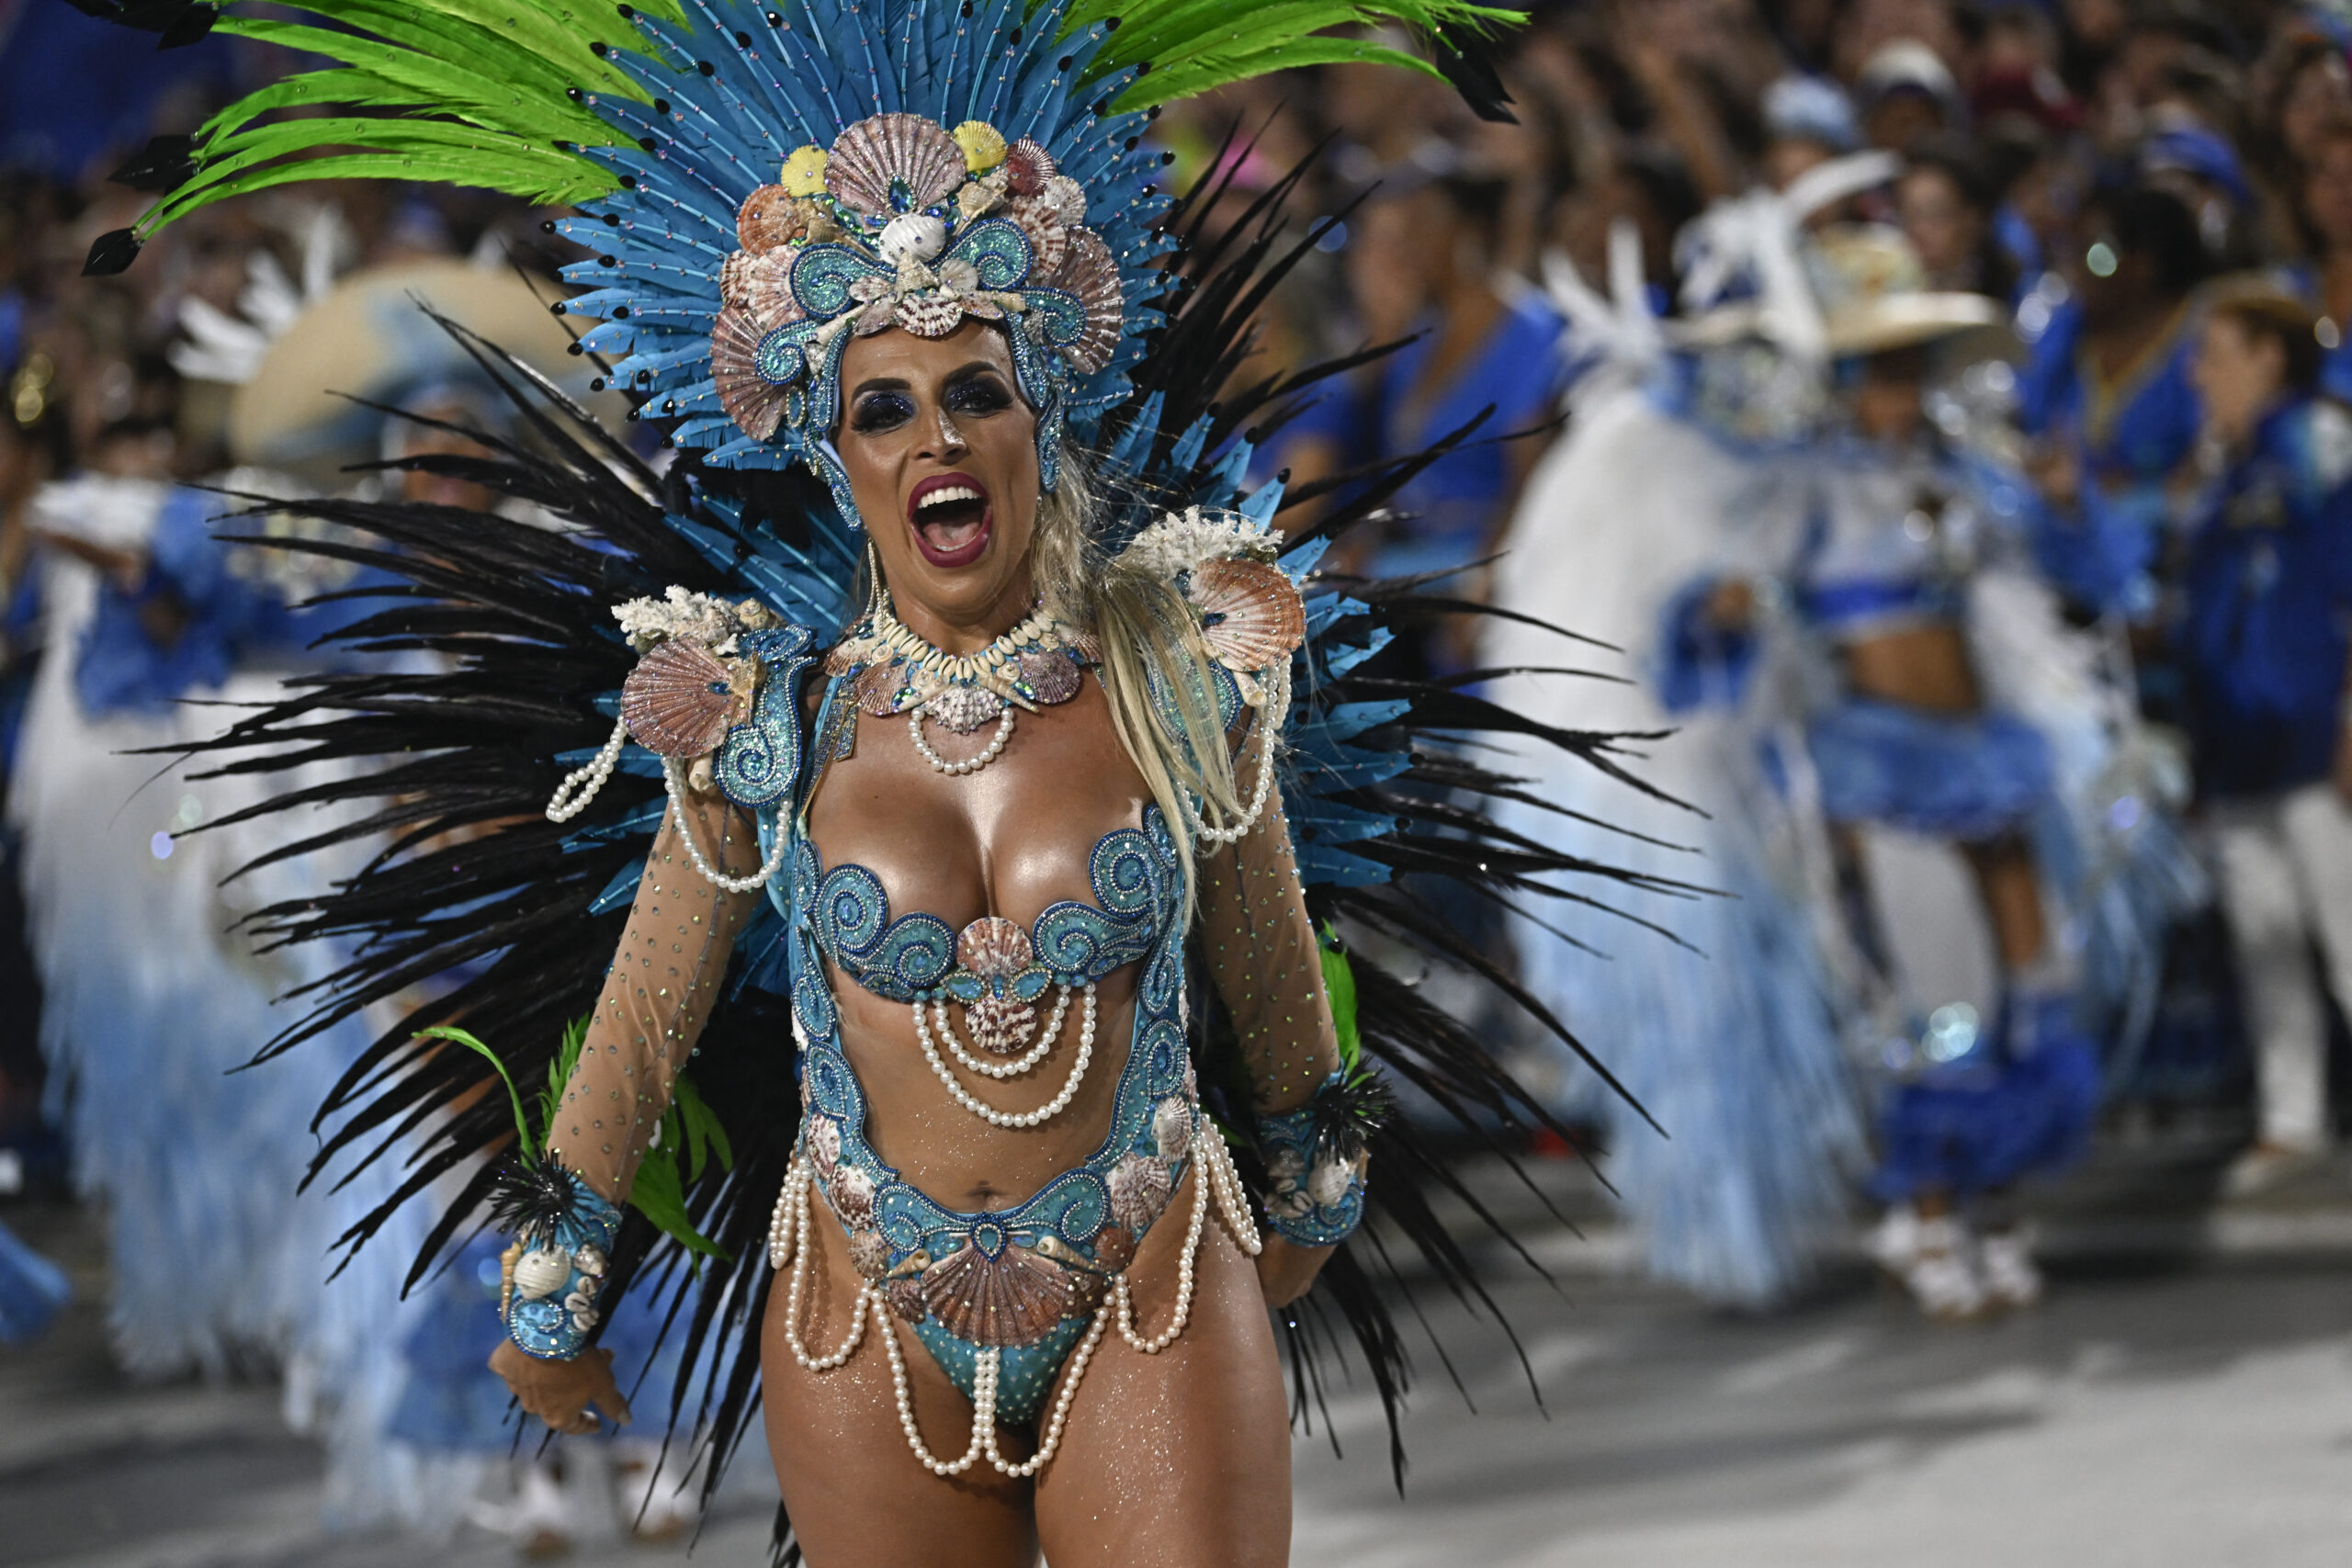 Καρναβάλι στο Ρίο: Οι χορευτές σάμπα και τα τεράστια άρματα που κλέβουν την παράσταση (video)